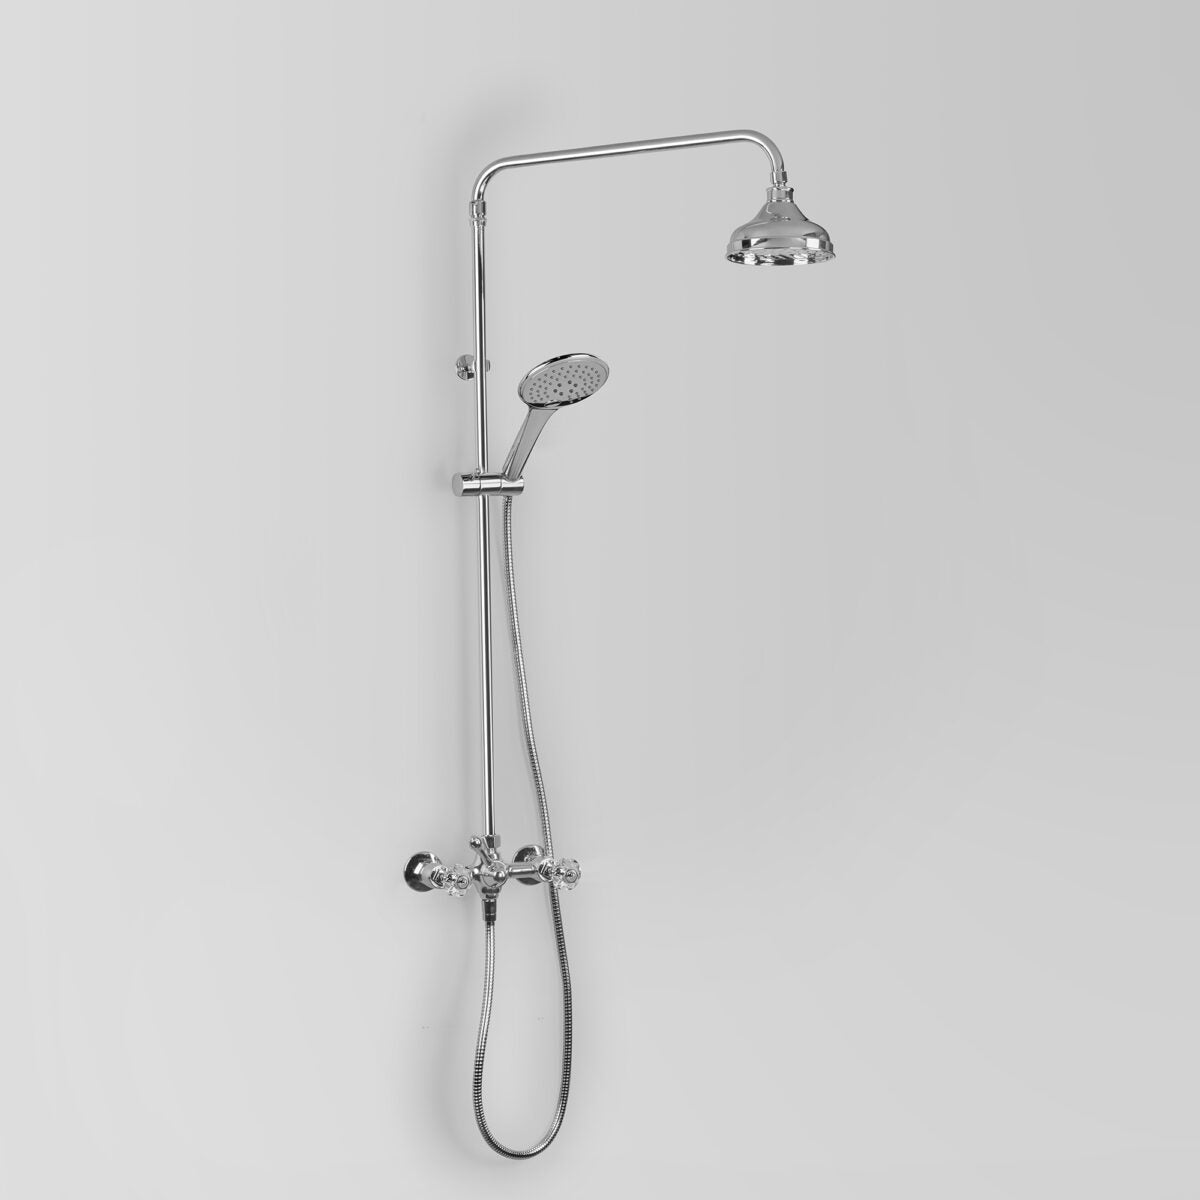 Olde English Shower Set w/ 150mm Shower Head & Multi-Function Hand Shower in Riser Rail Holder